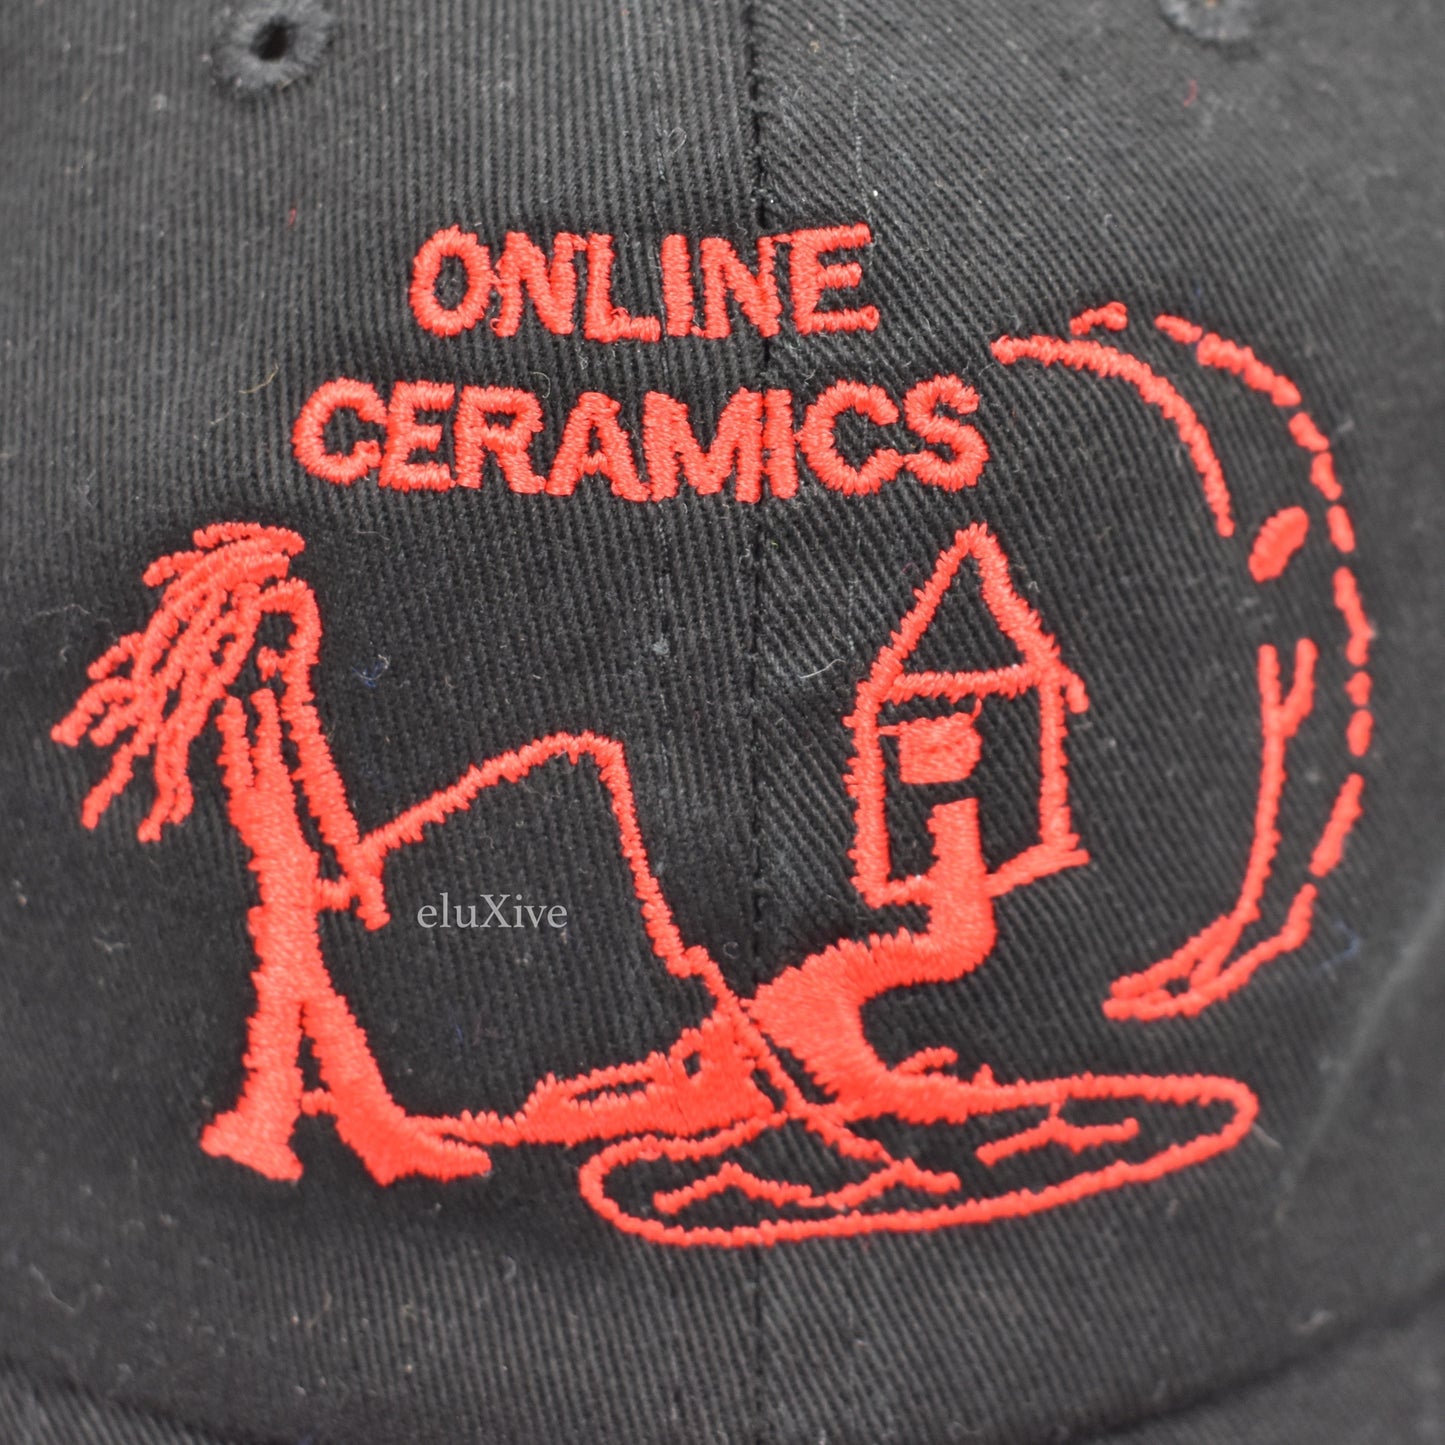 Online Ceramics - Fishing Under The Moonlight Logo Hat (Black)